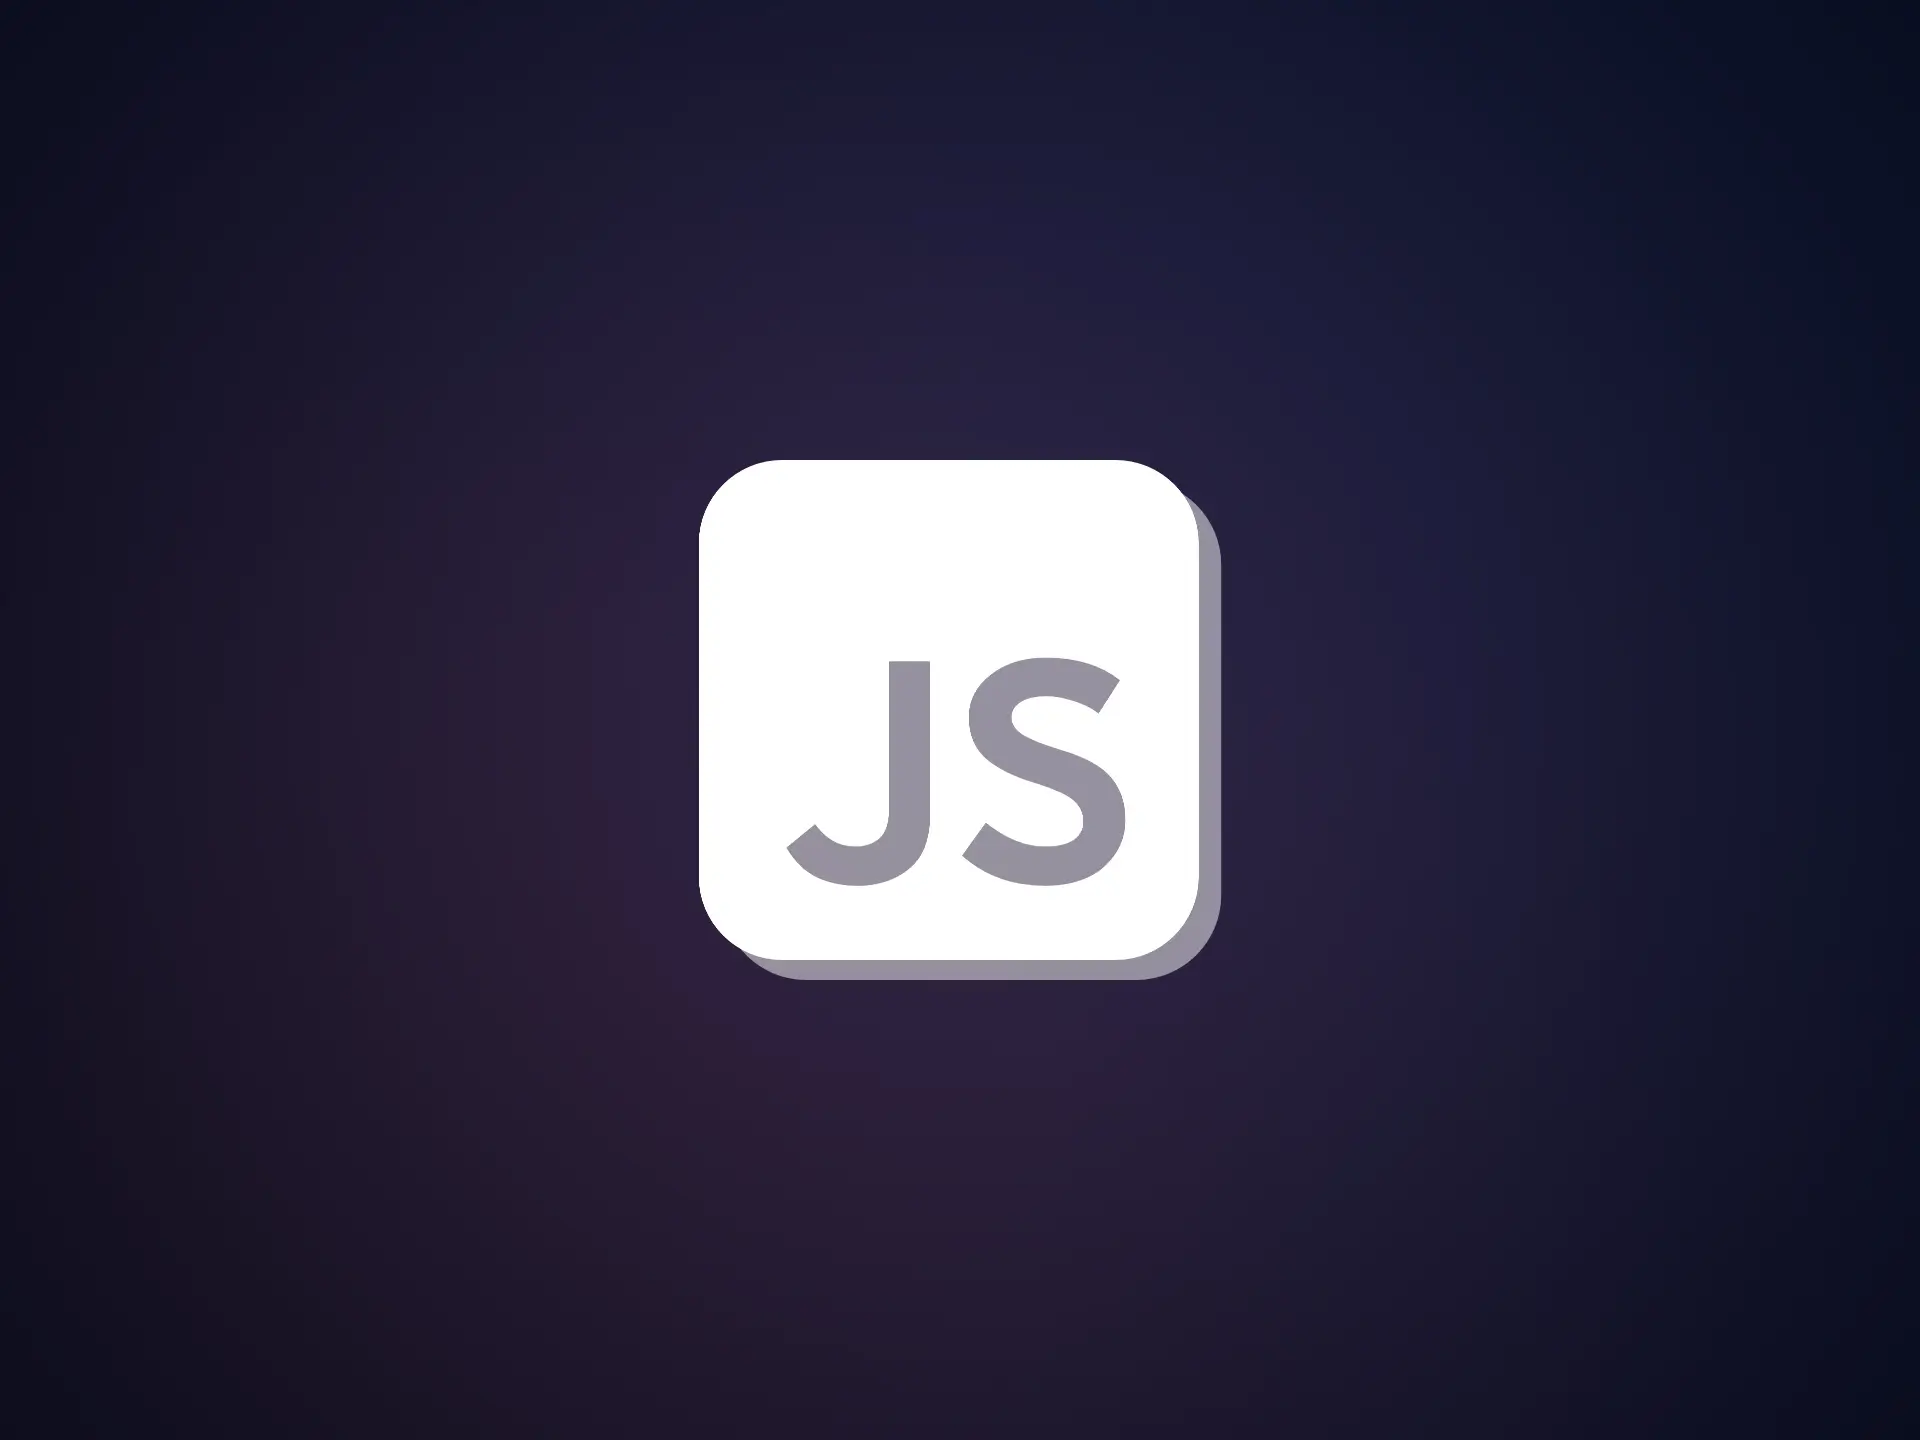 Enable JavaScript